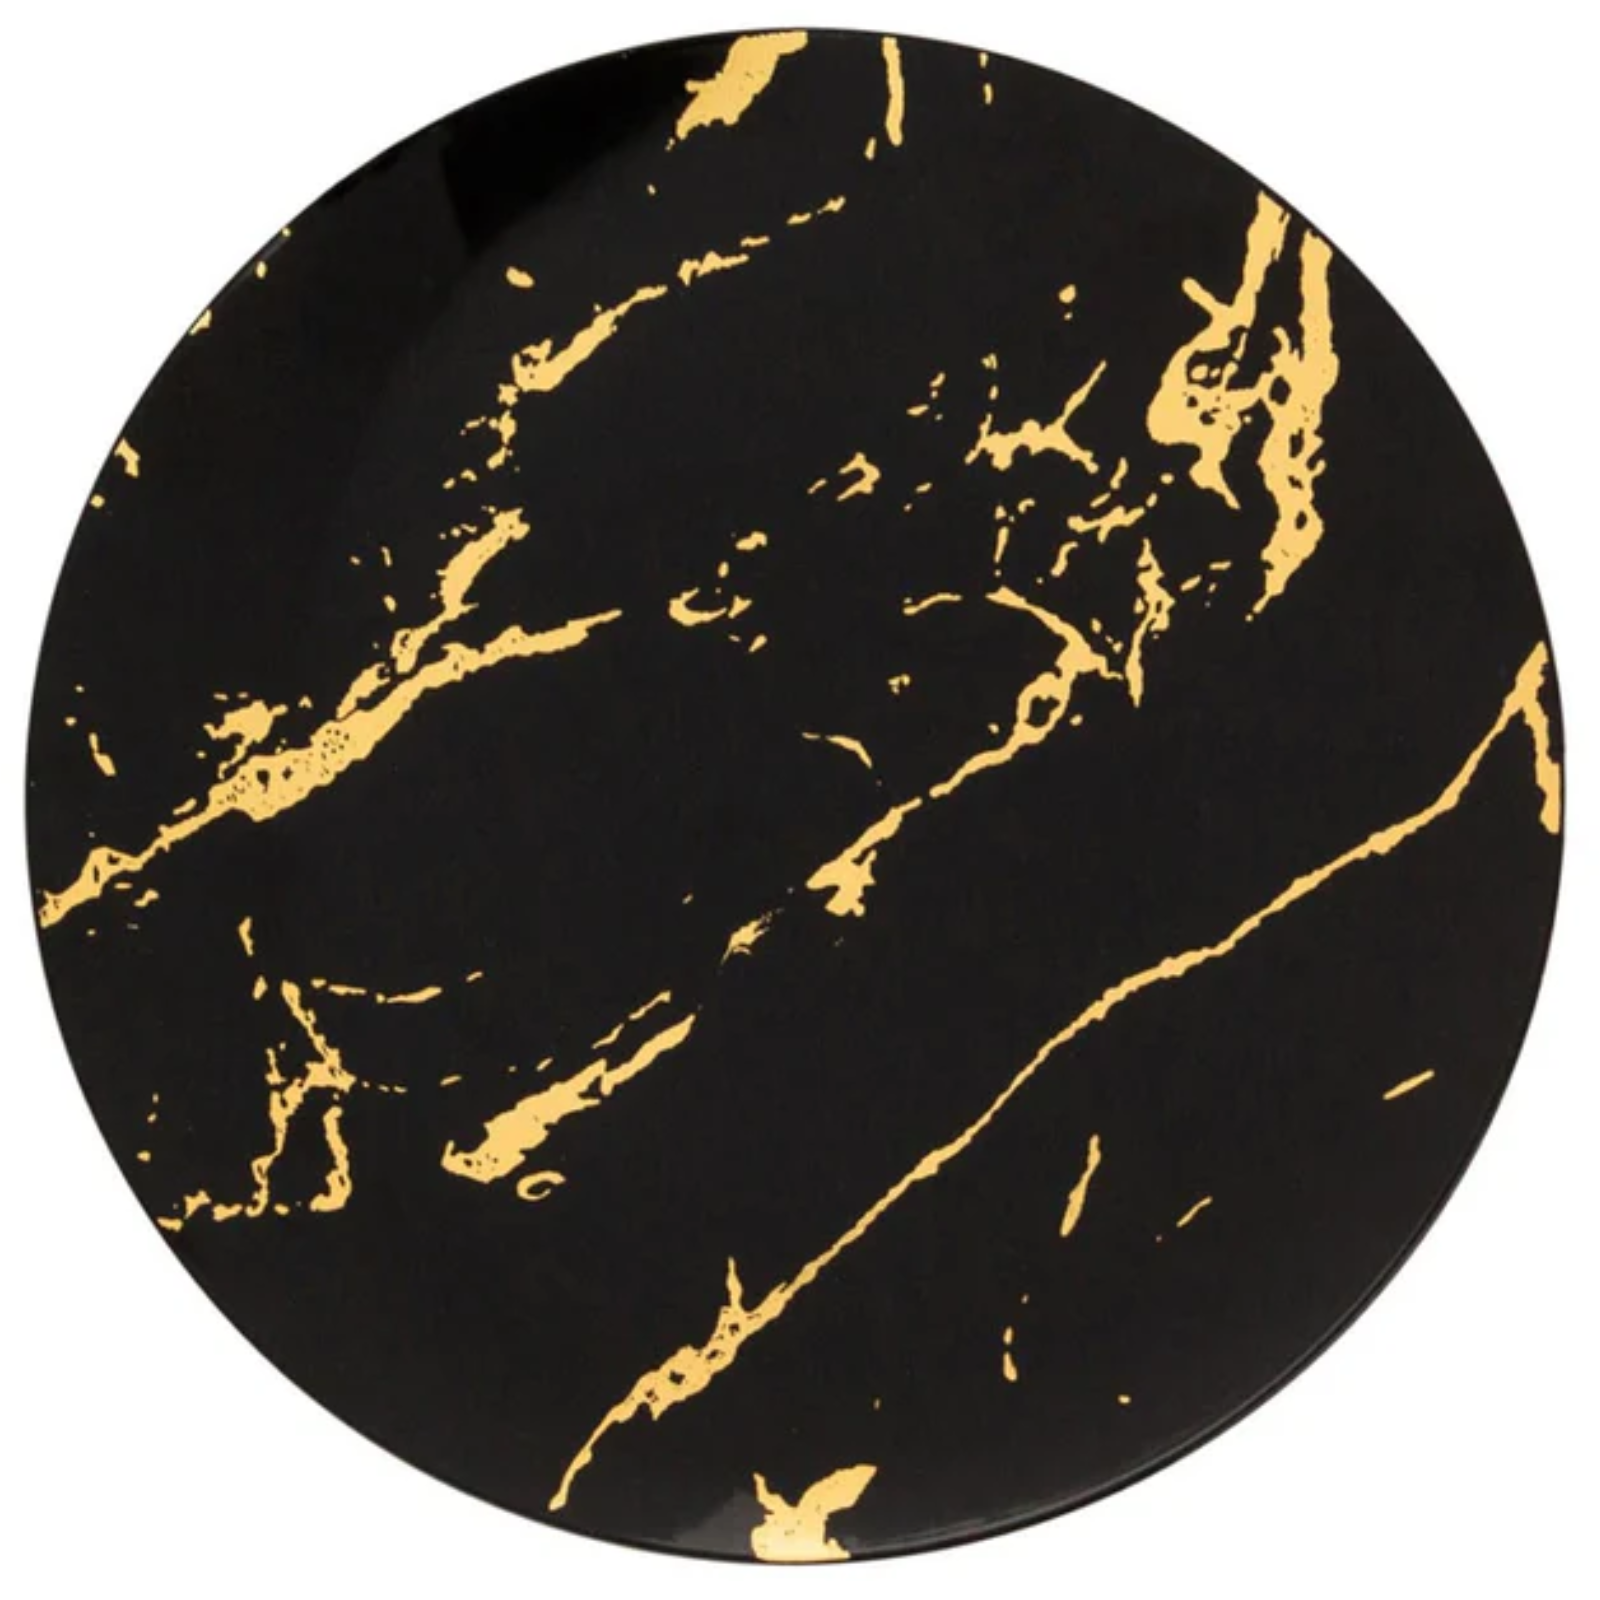 Gold Stroke Black Dinner Plates 10.25″ Elegant Plates Blue Sky   